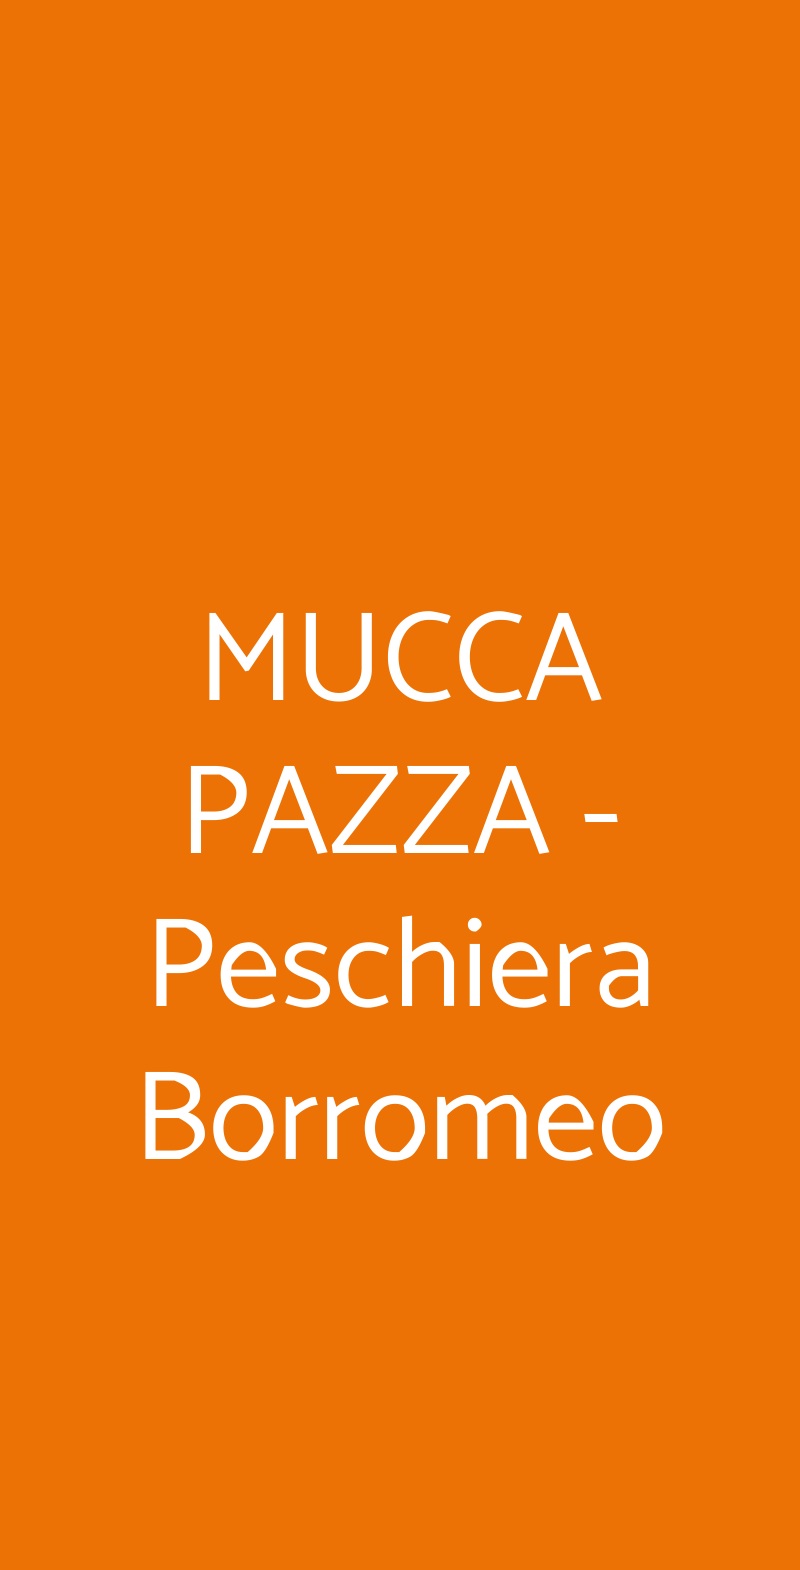 MUCCA PAZZA  Peschiera Borromeo menù 1 pagina